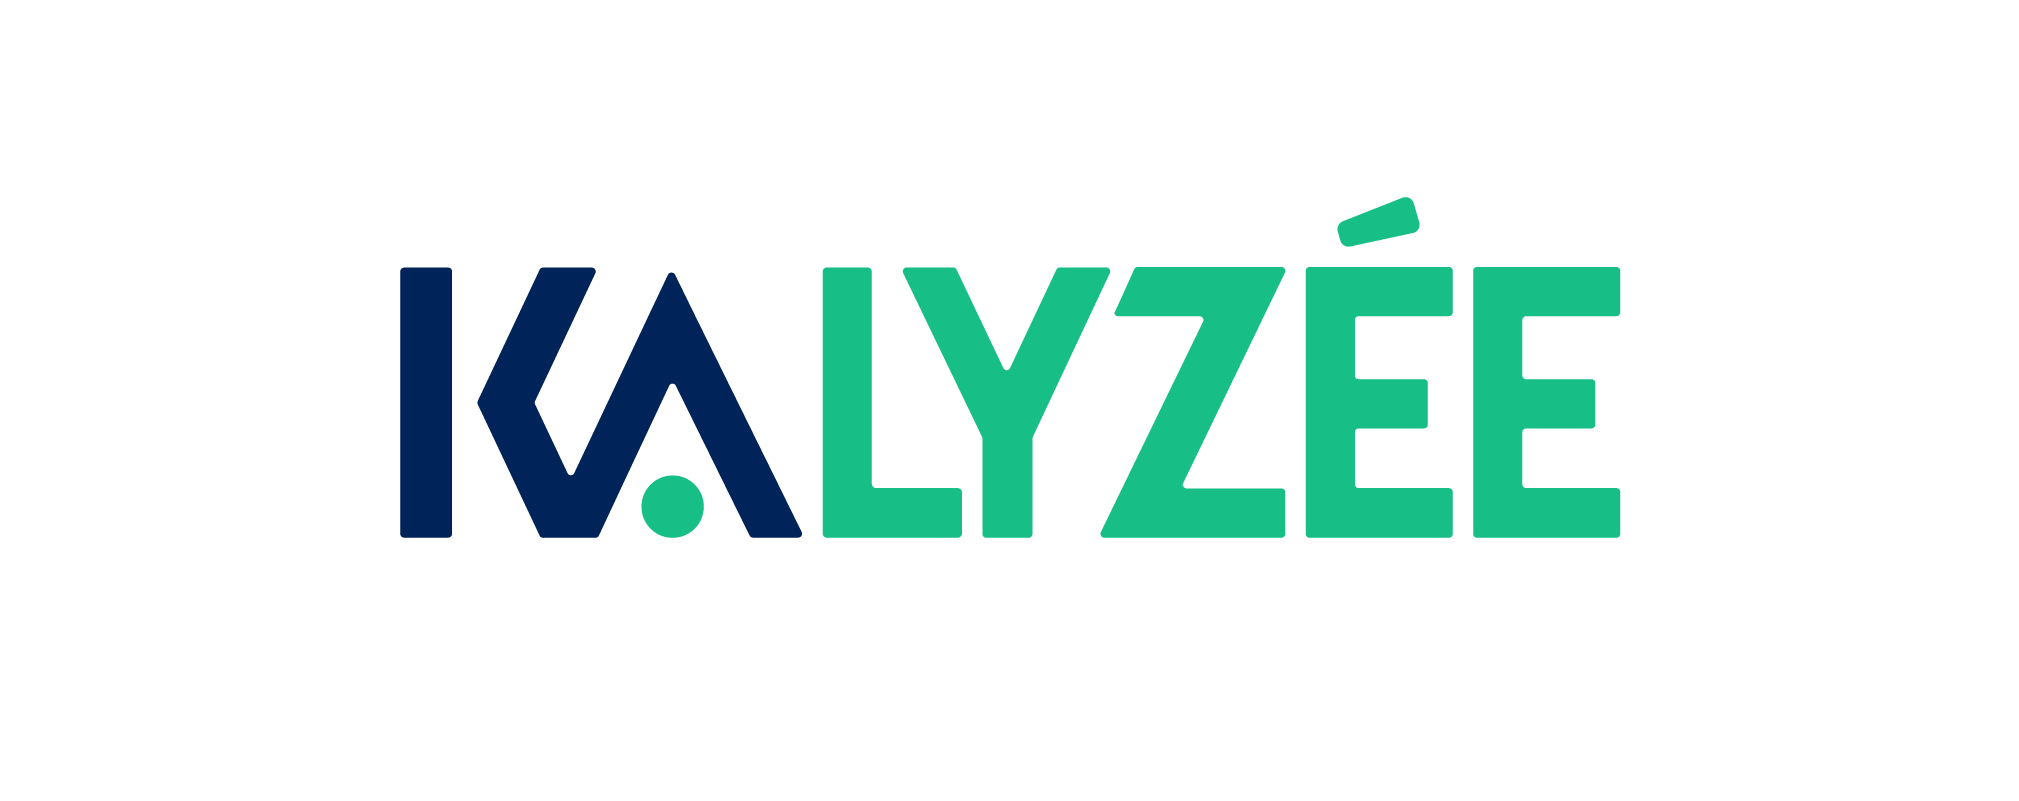 KALYSEE - Partenaire officiel - SYLVER